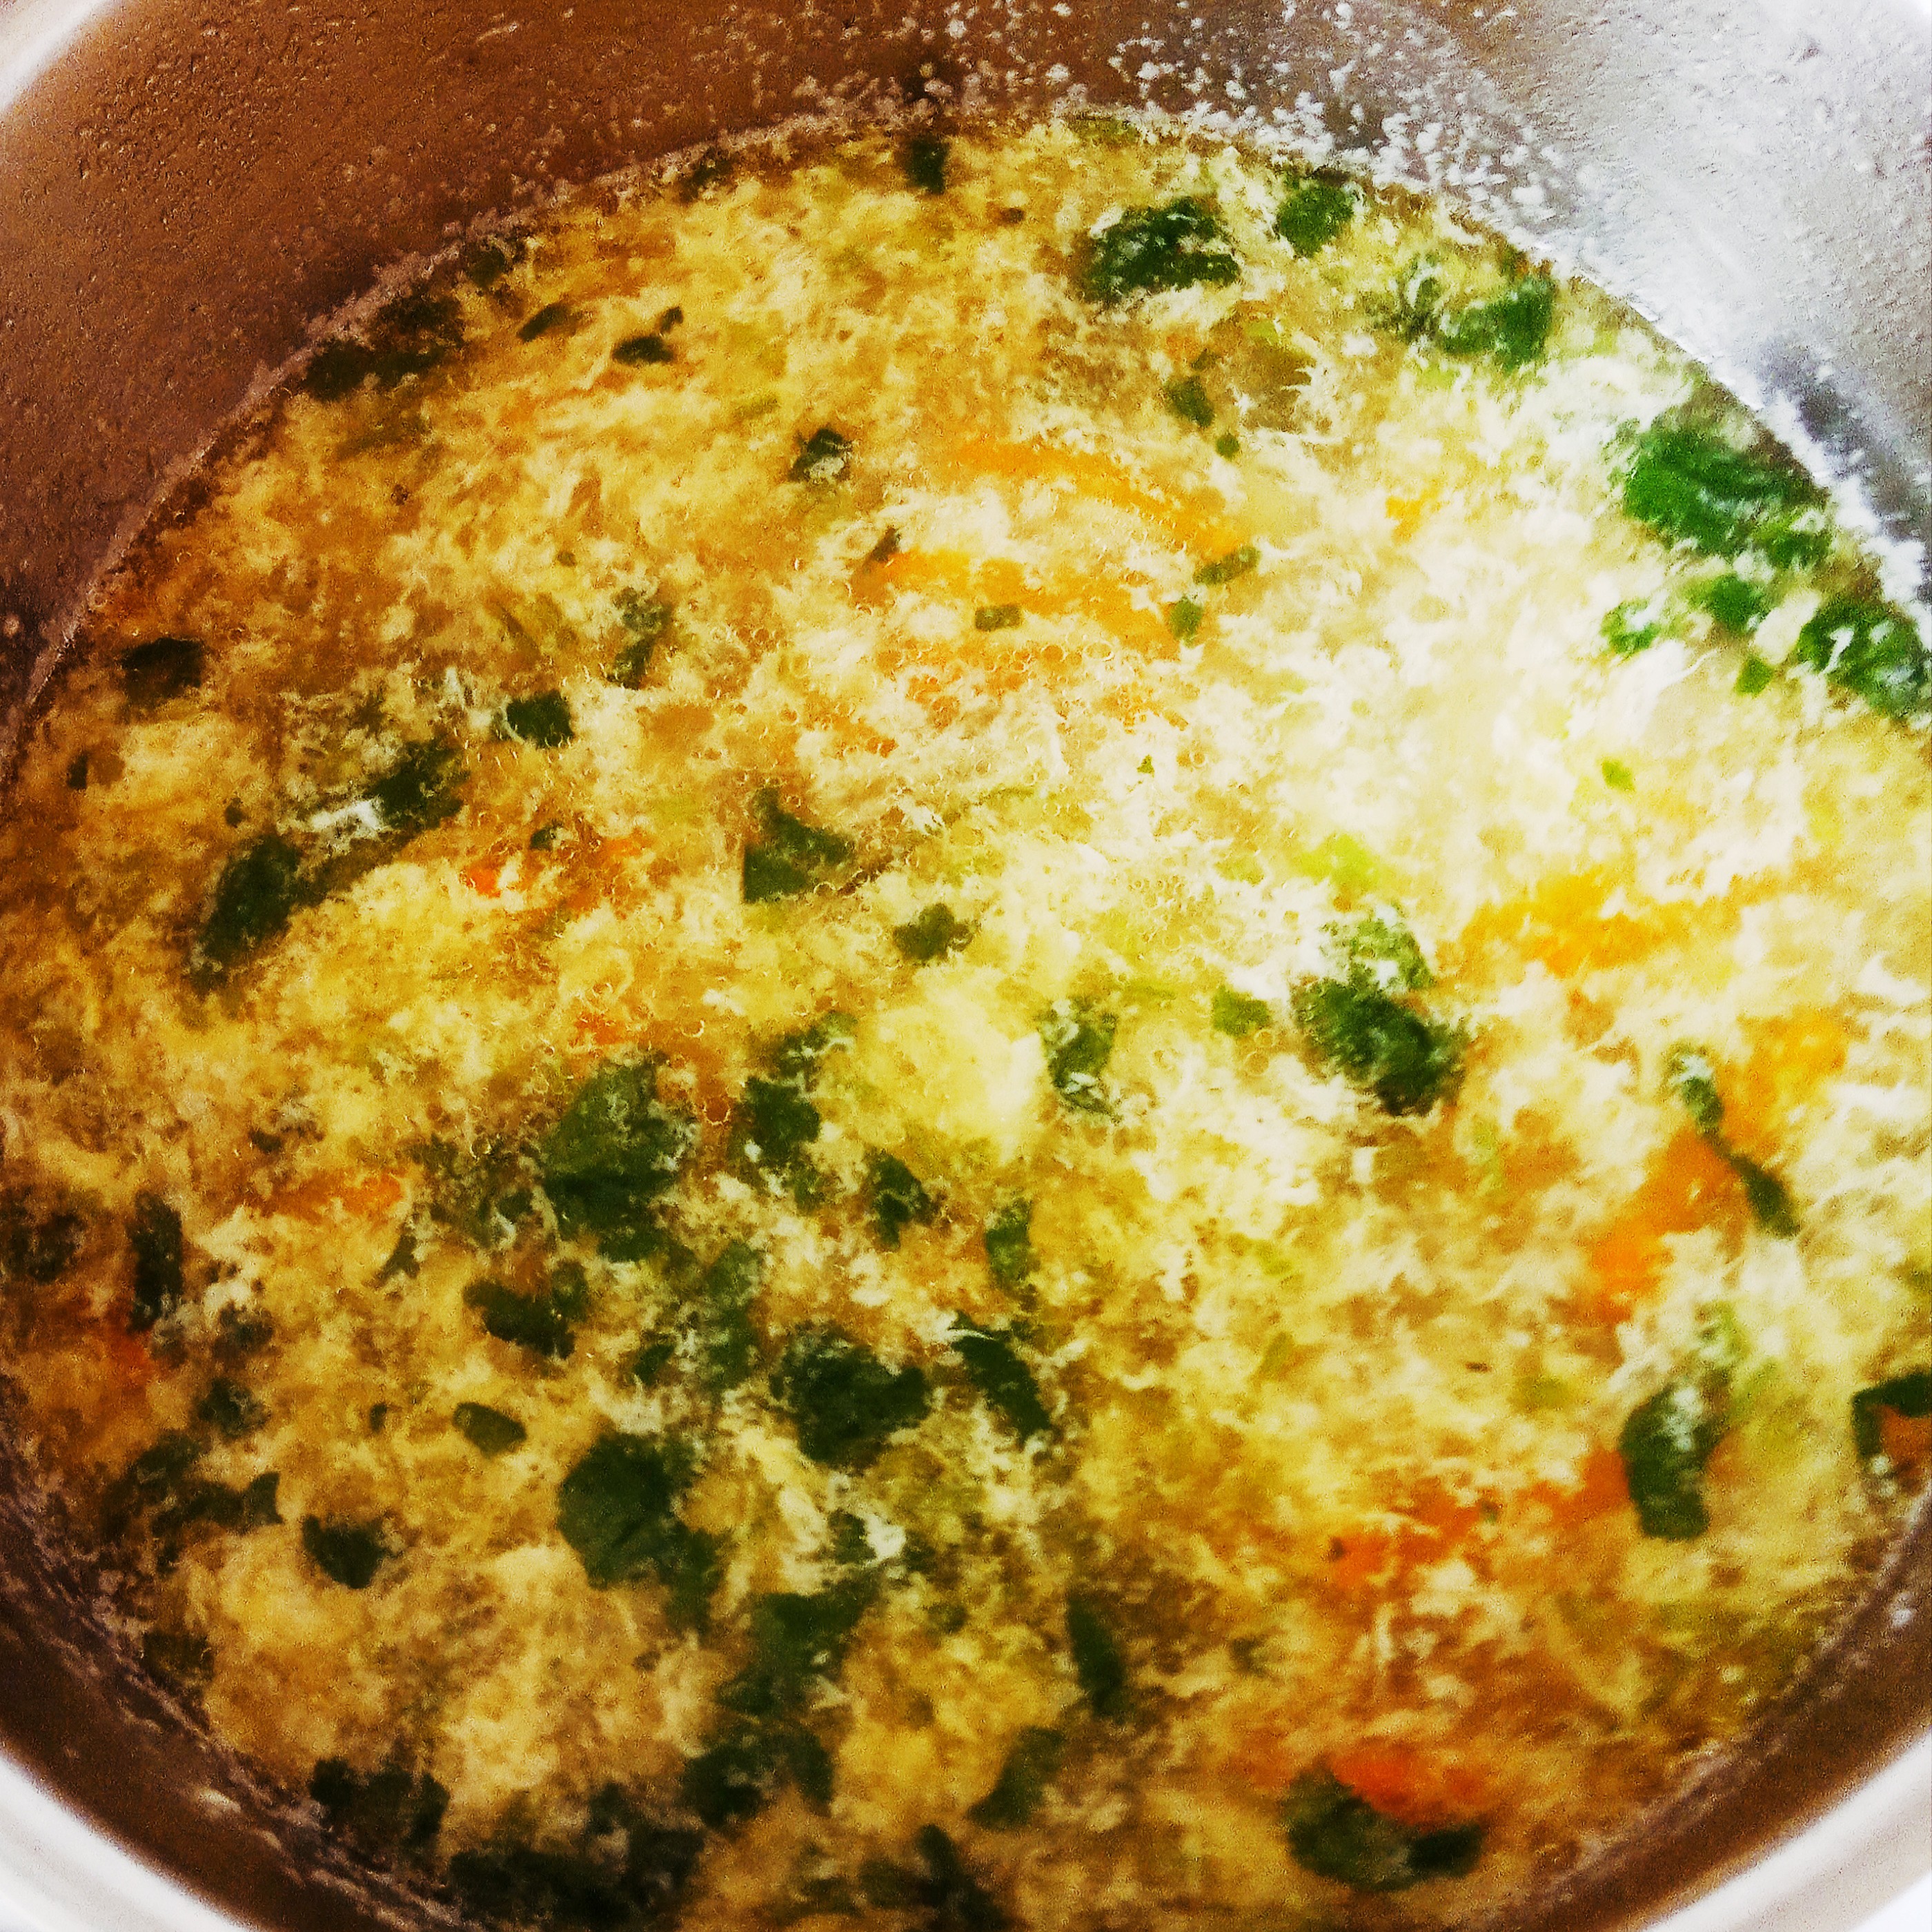 Суп со стручковой фасолью и яйцом.(ПП).на ужин